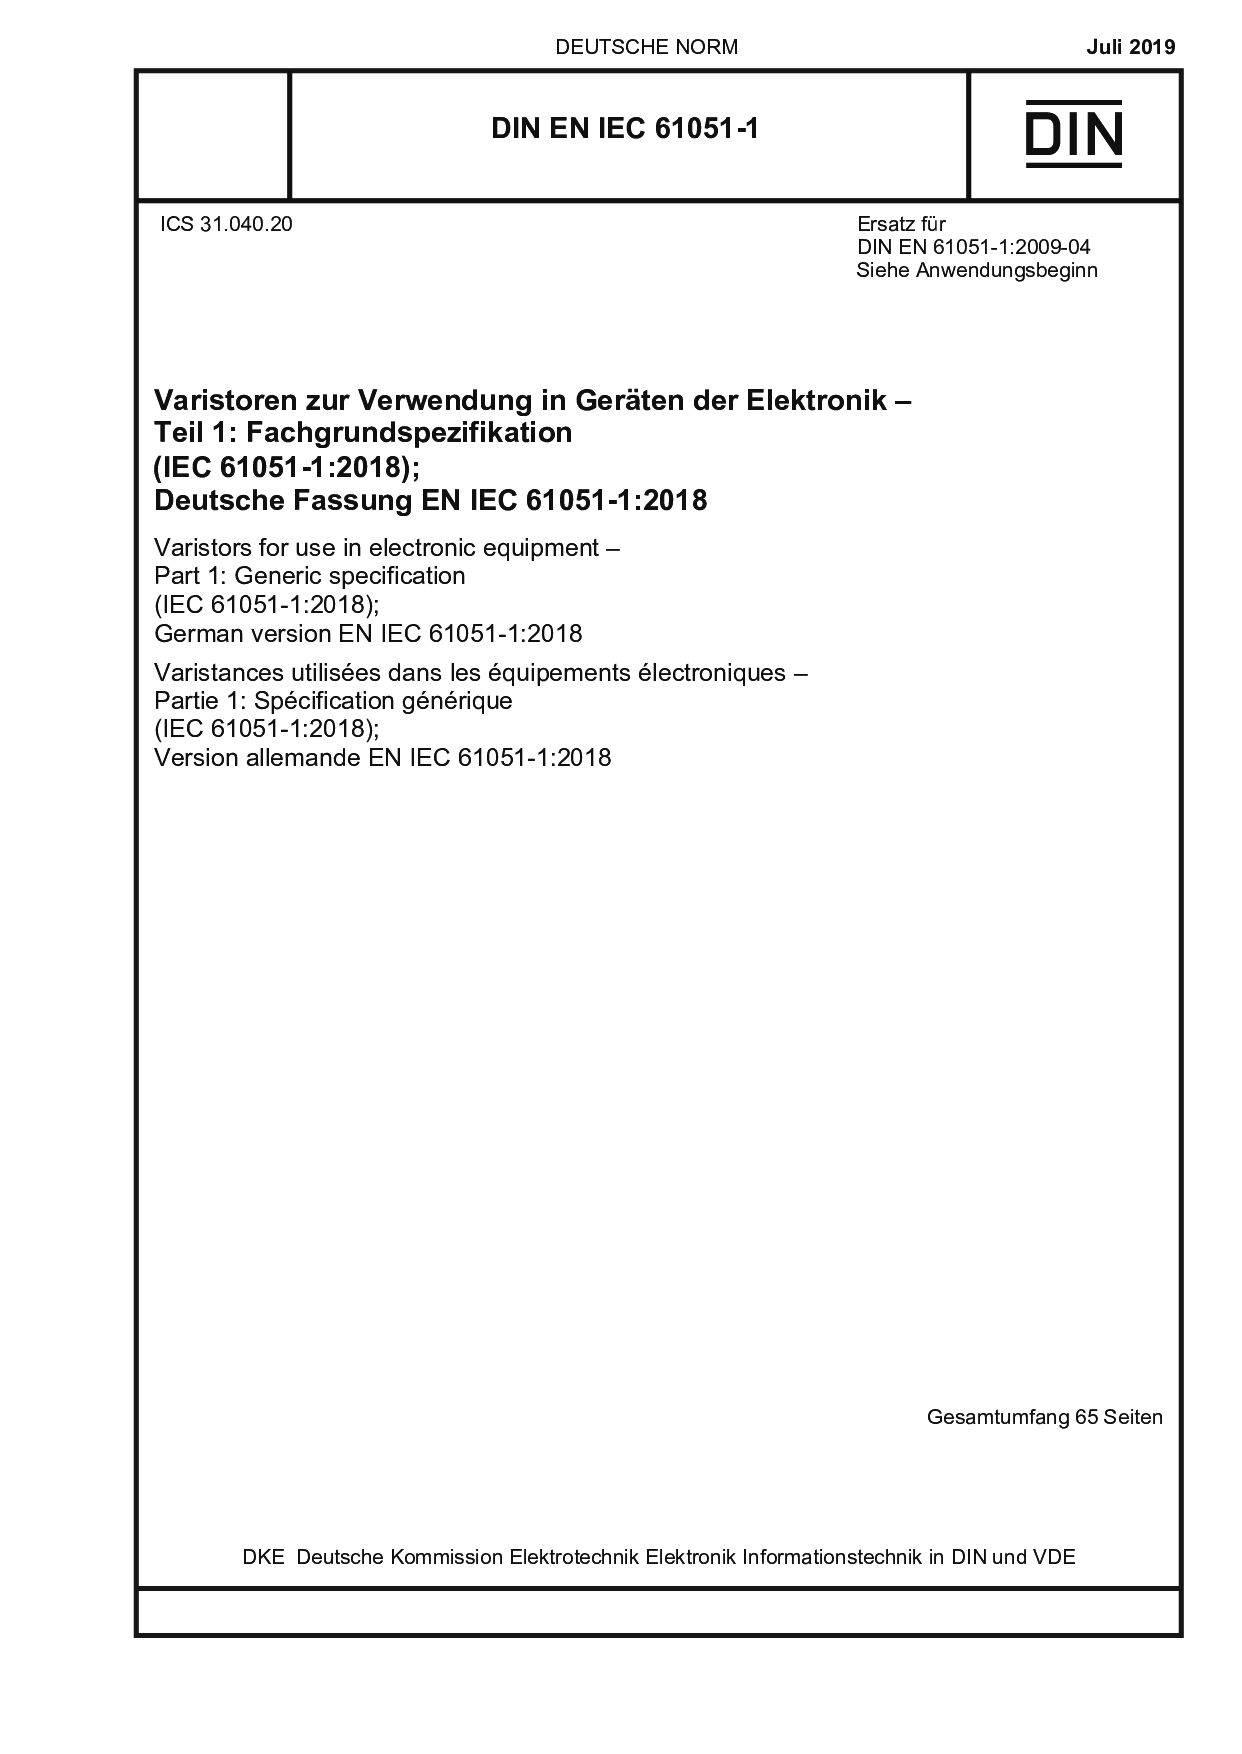 DIN EN IEC 61051-1:2019-07